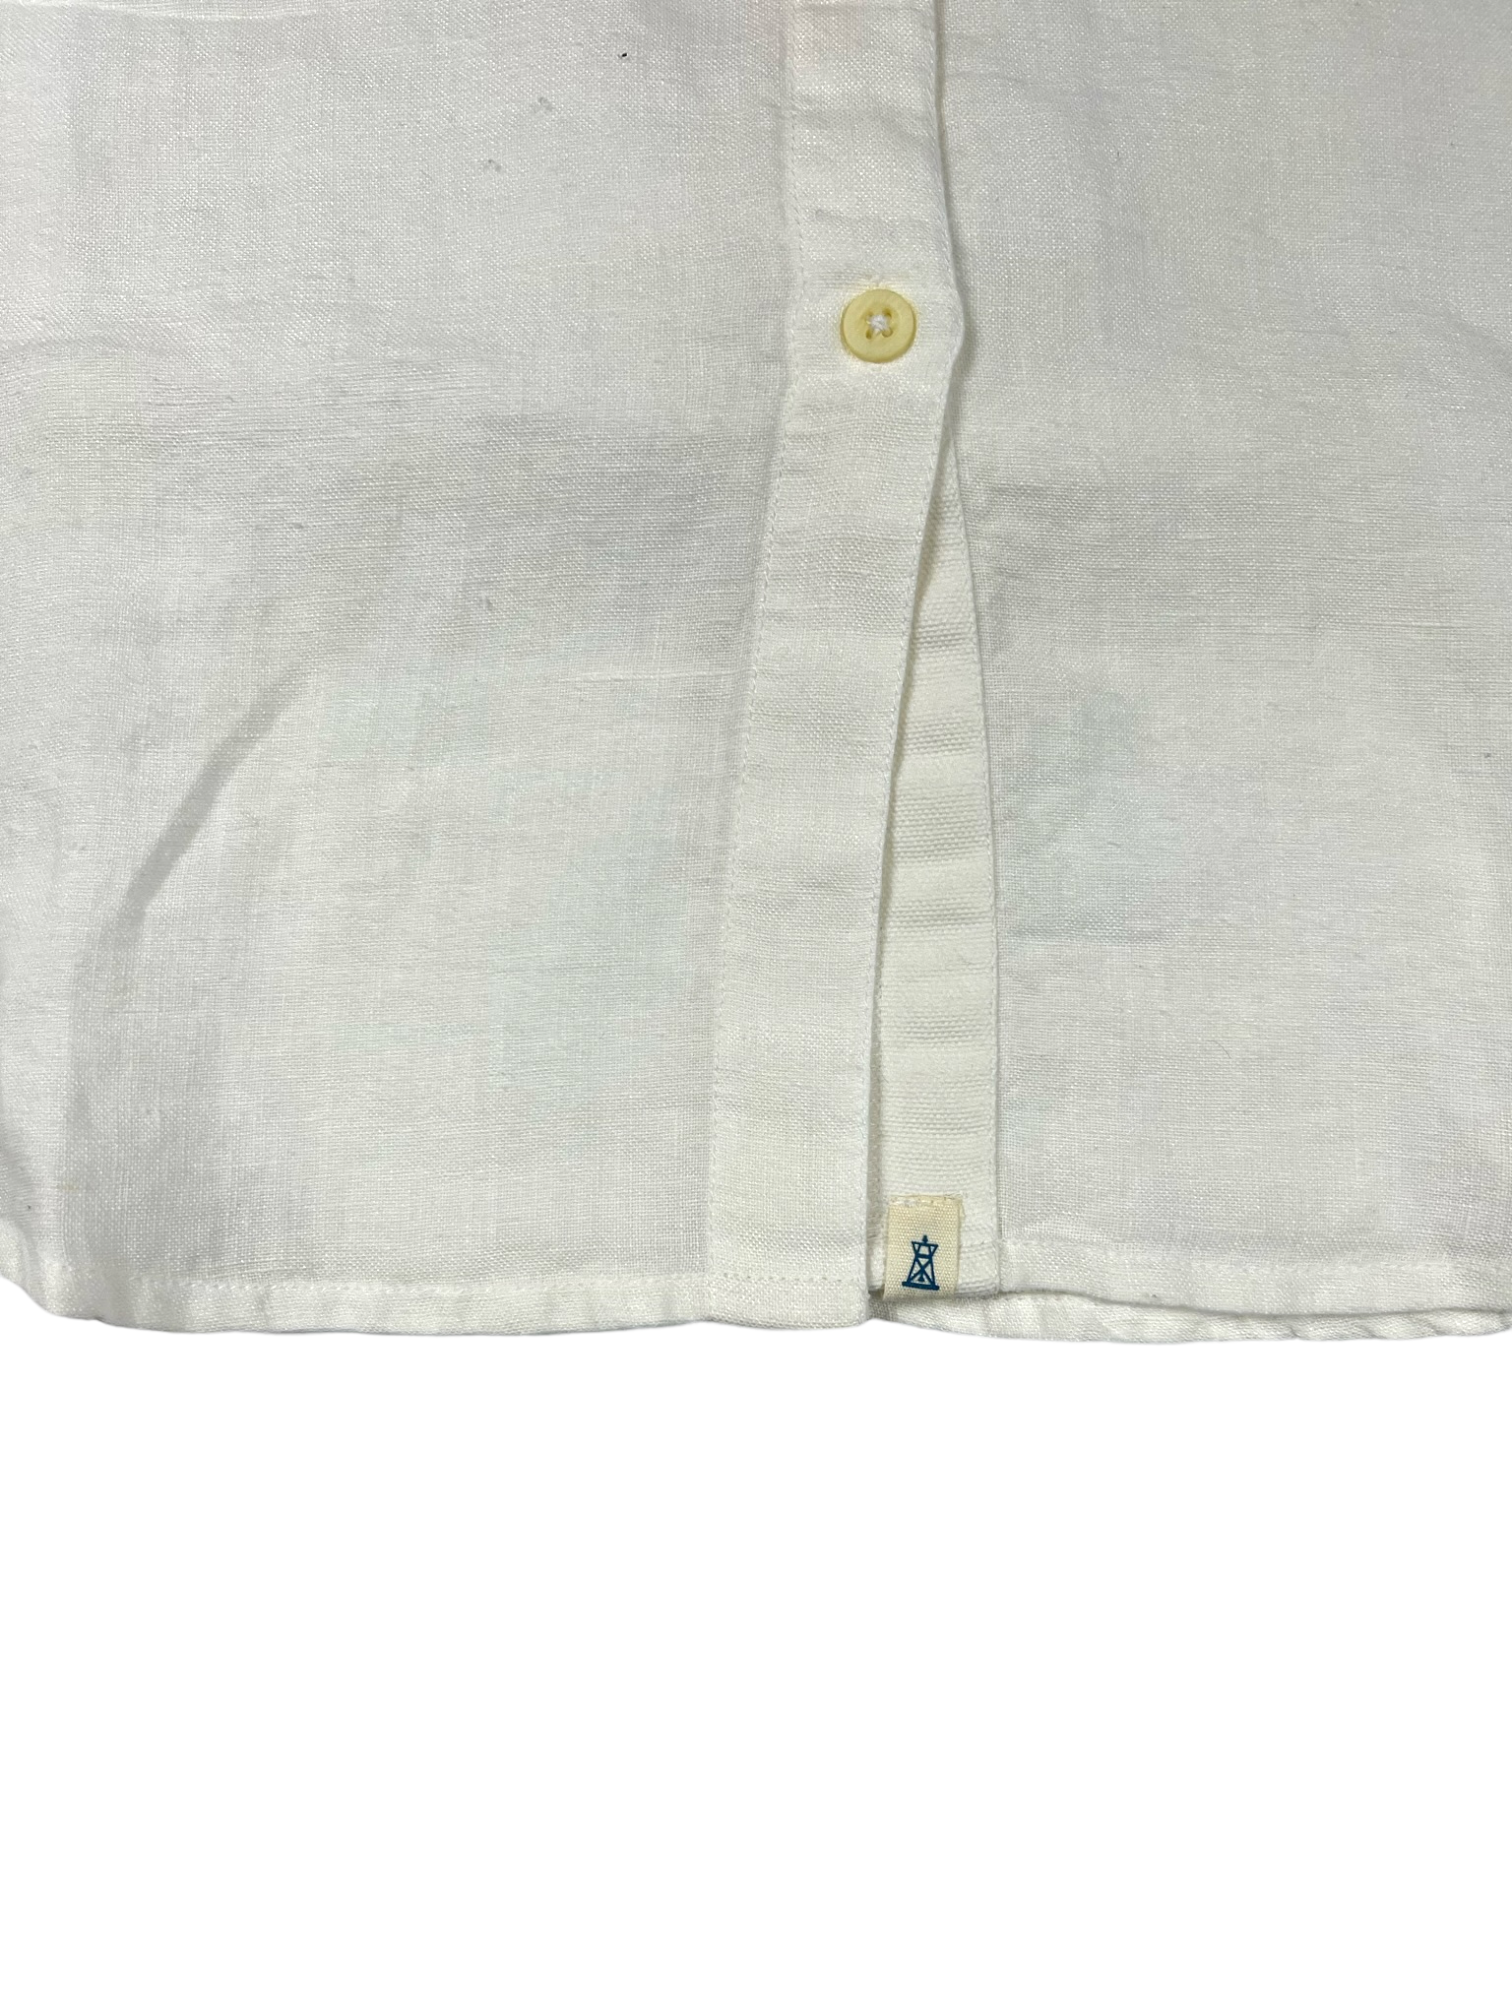 Seaside Shirt - Summer Linen